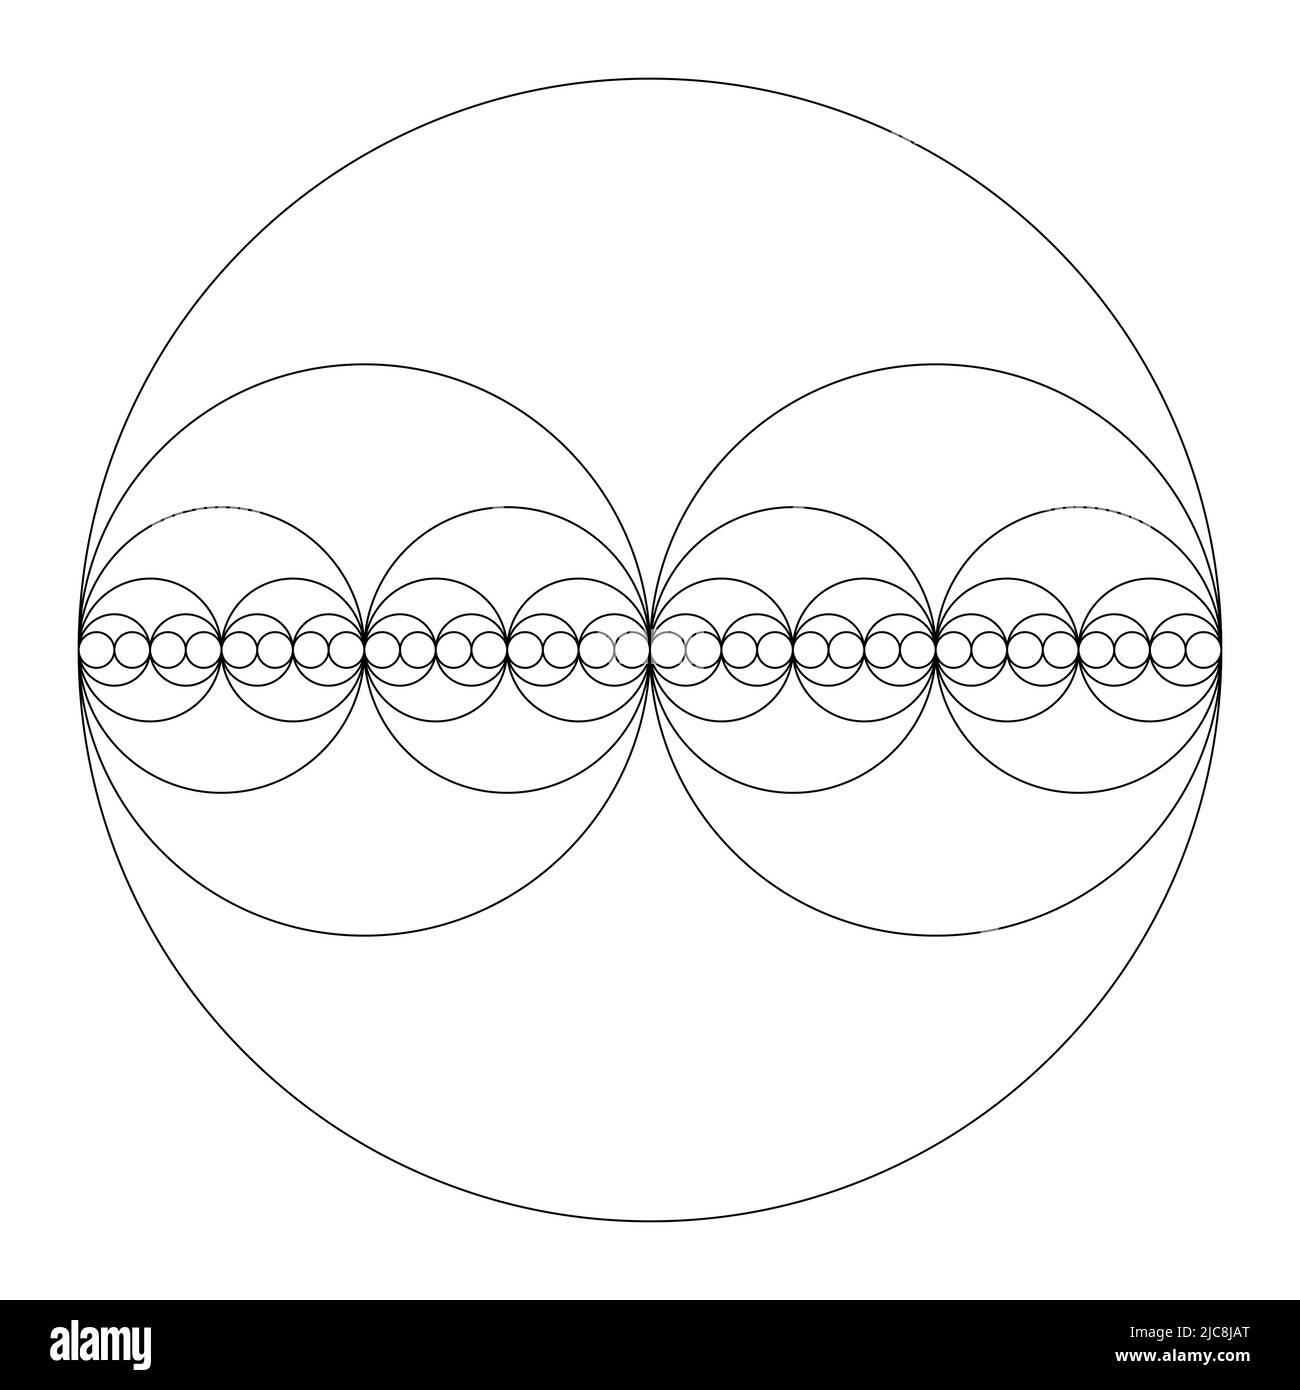 Kreise bilden eine binäre Sequenz. Kreise, halbiert in Durchmessern, zeigen die Macht der zwei, die Exponentiation mit der Nummer zwei. Stockfoto